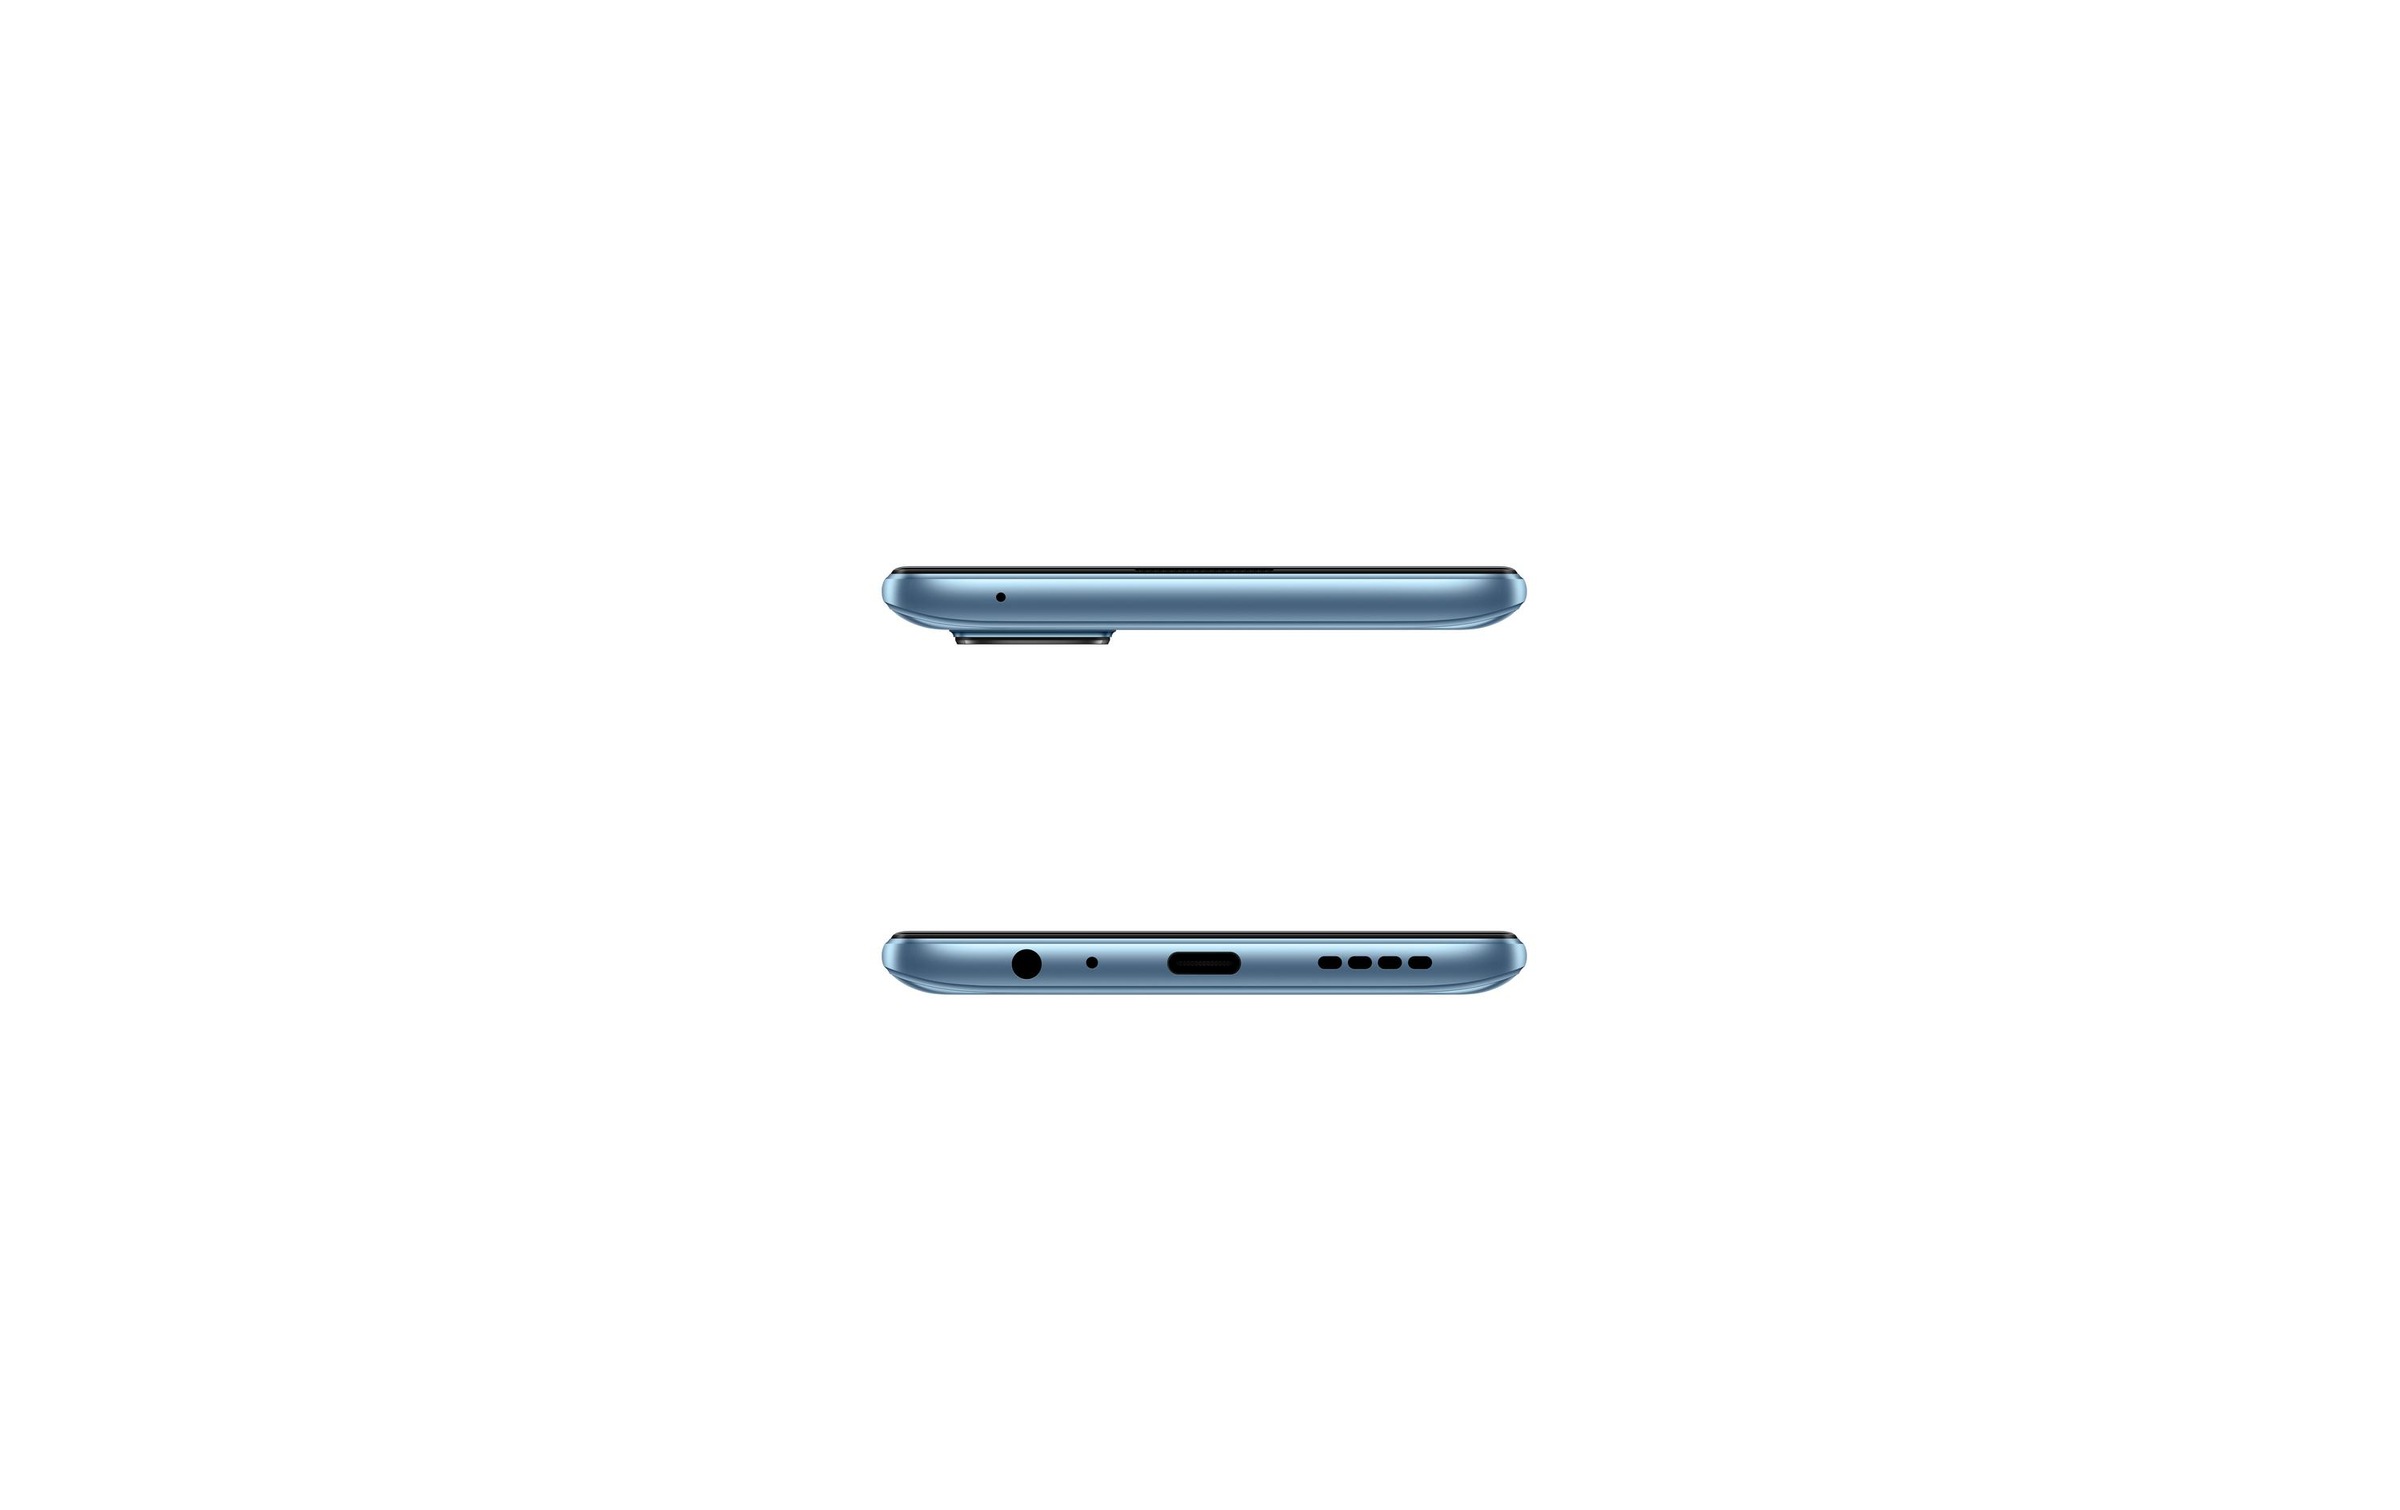 Realme Smartphone »Realme 7 Pro«, silberfarben, 16,3 cm/6,4 Zoll, 128 GB Speicherplatz